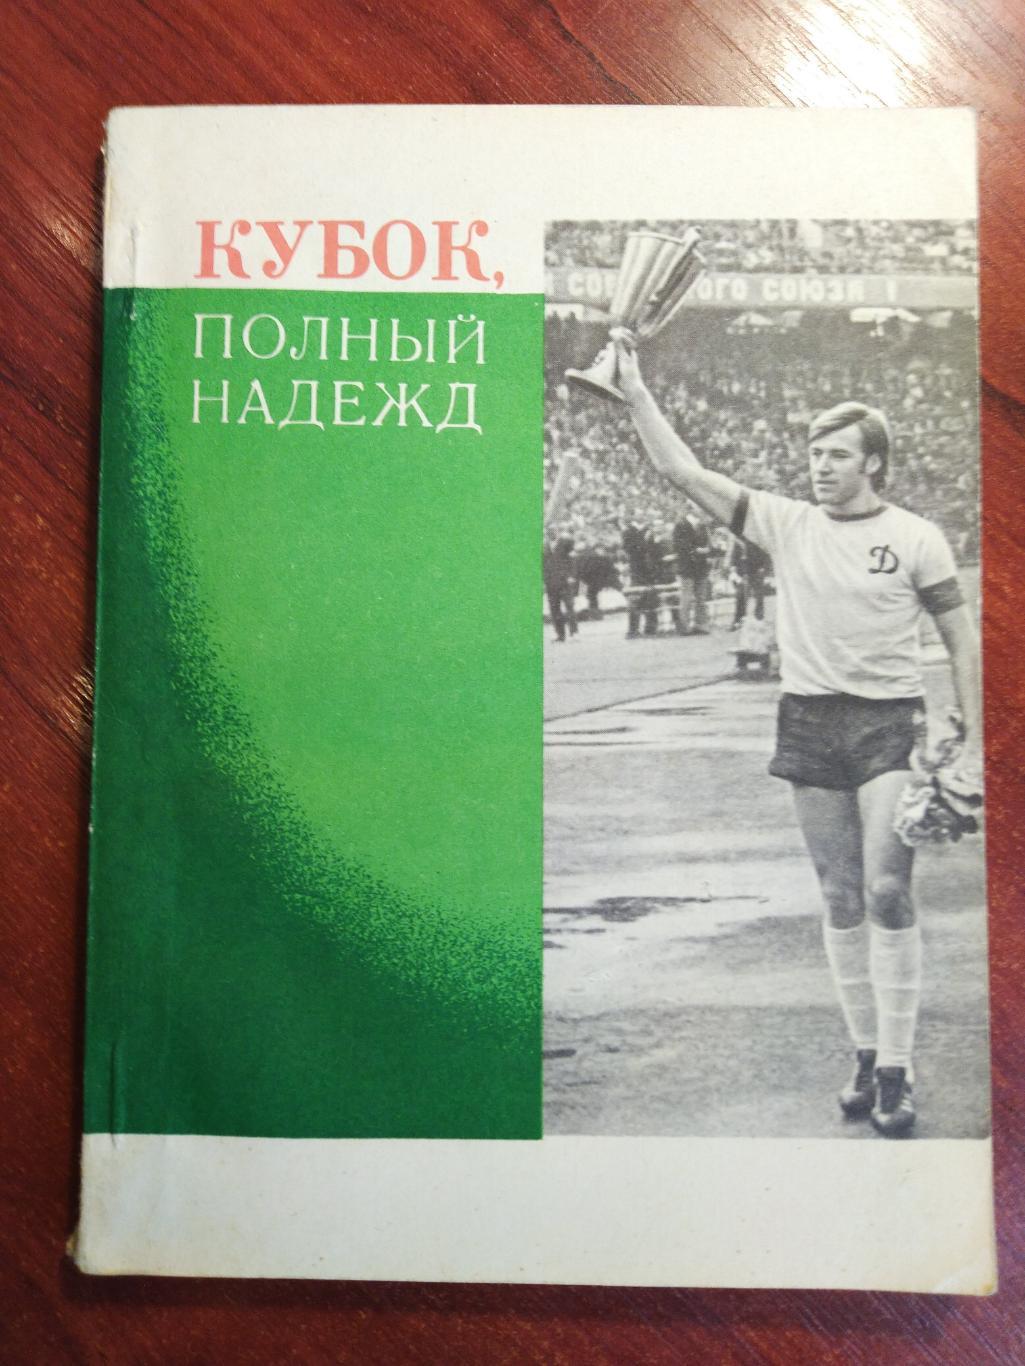 Черкасский Футбол Кубок полный надежд Динамо Киев 1975